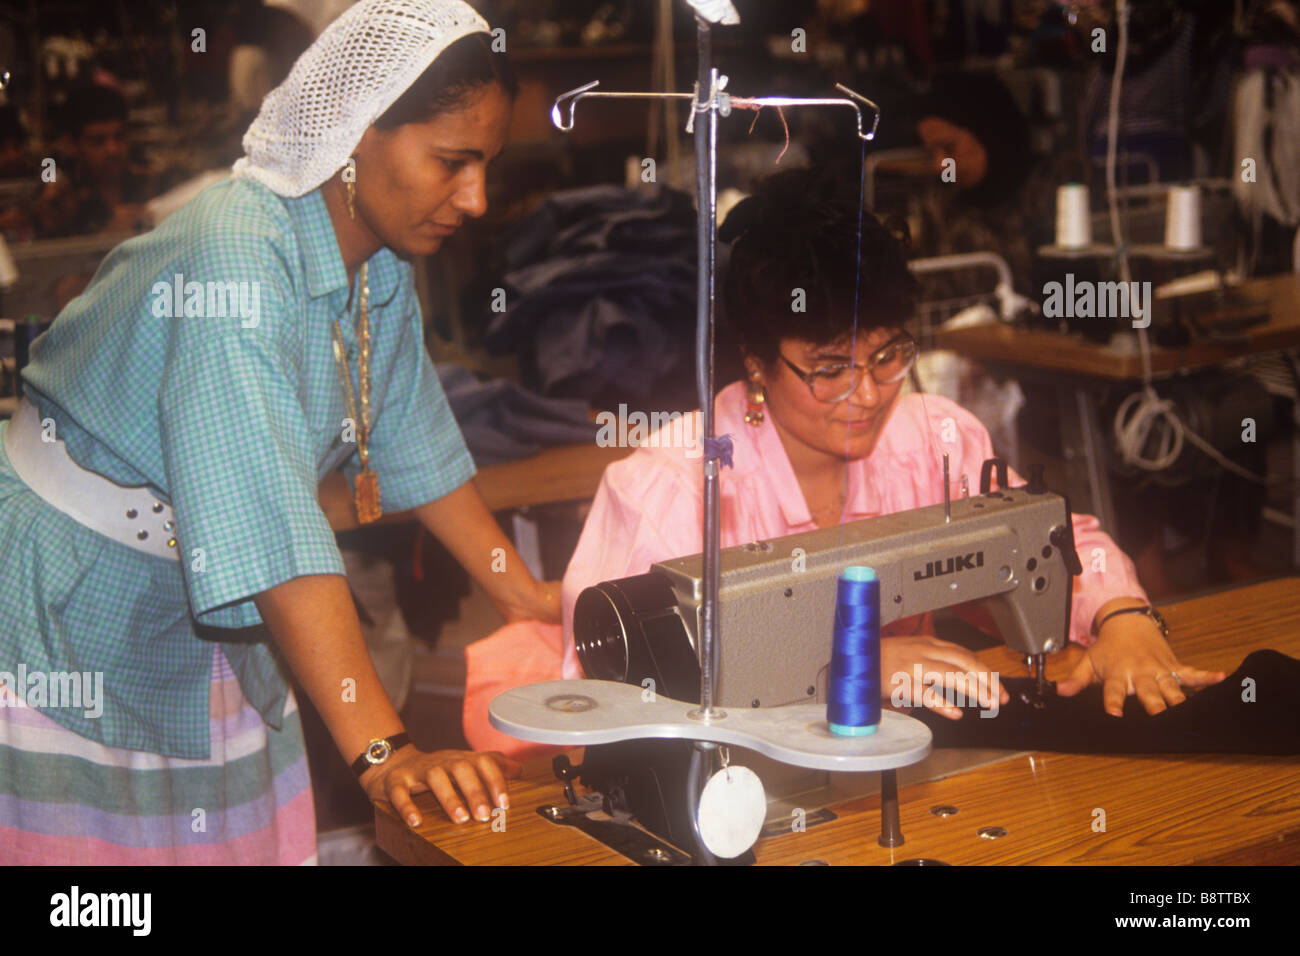 Sewing machinist immagini e fotografie stock ad alta risoluzione - Alamy